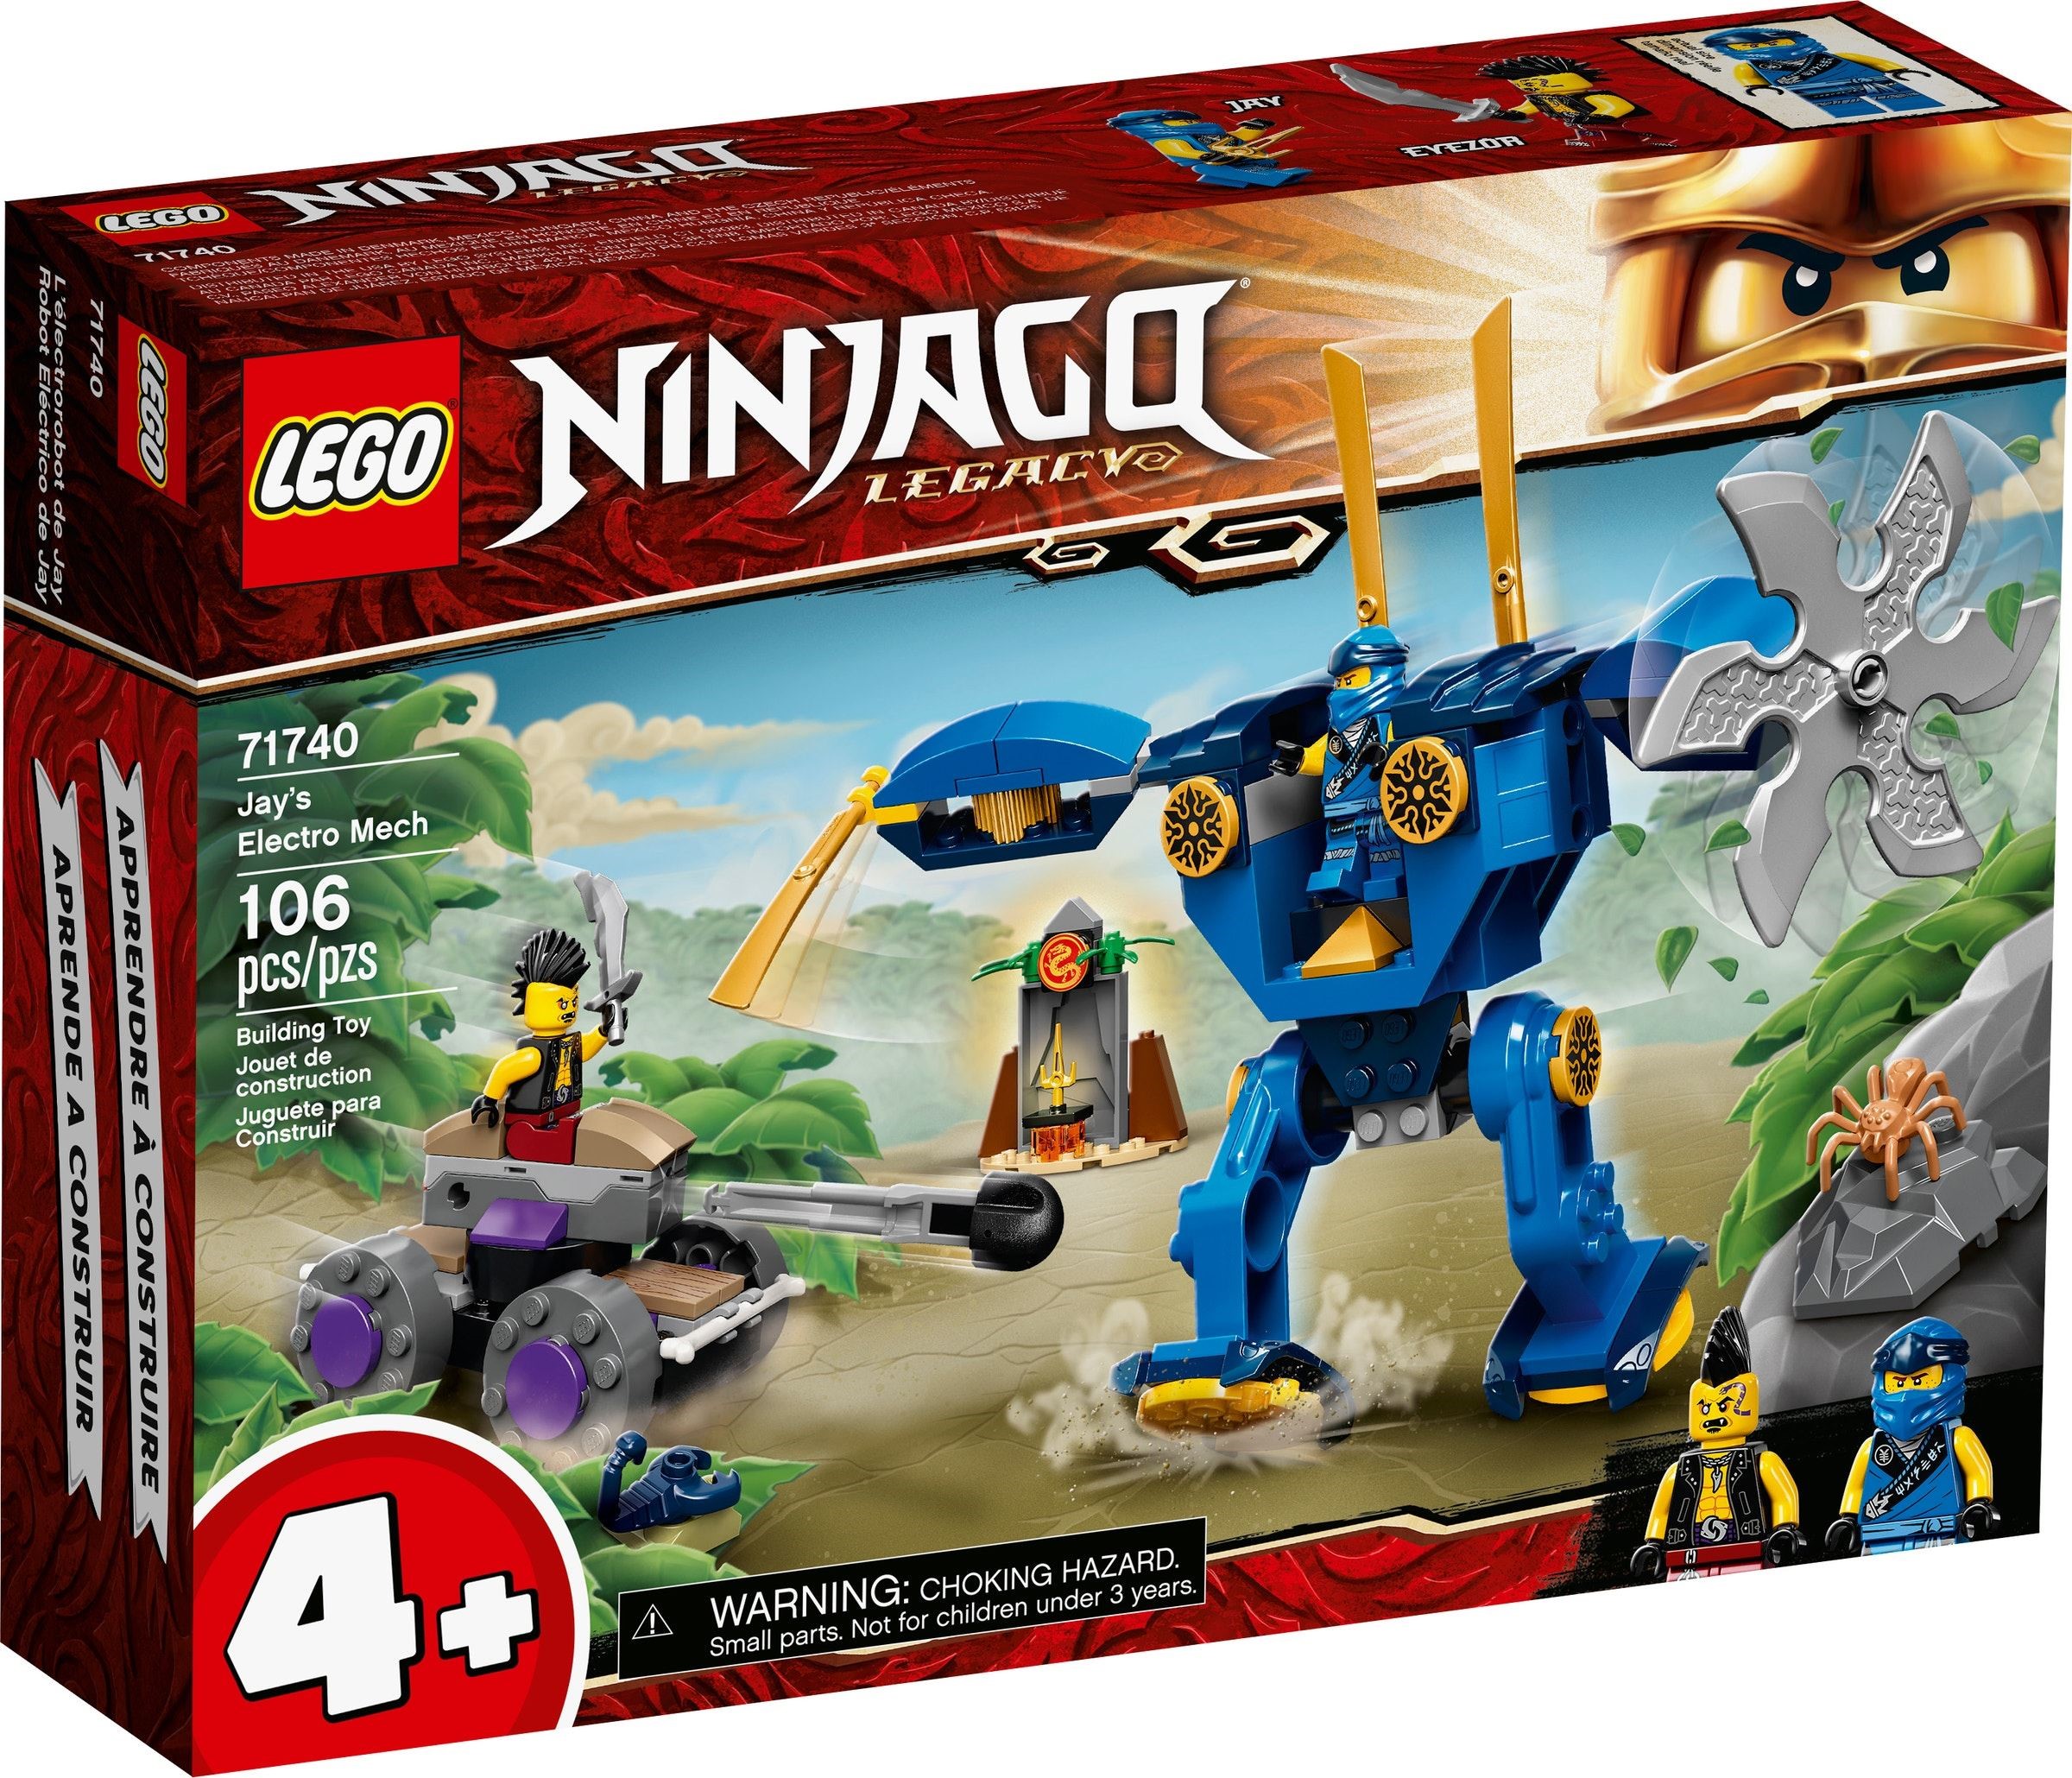 LEGO Ninjago - Jay's Electro Mech (71740)